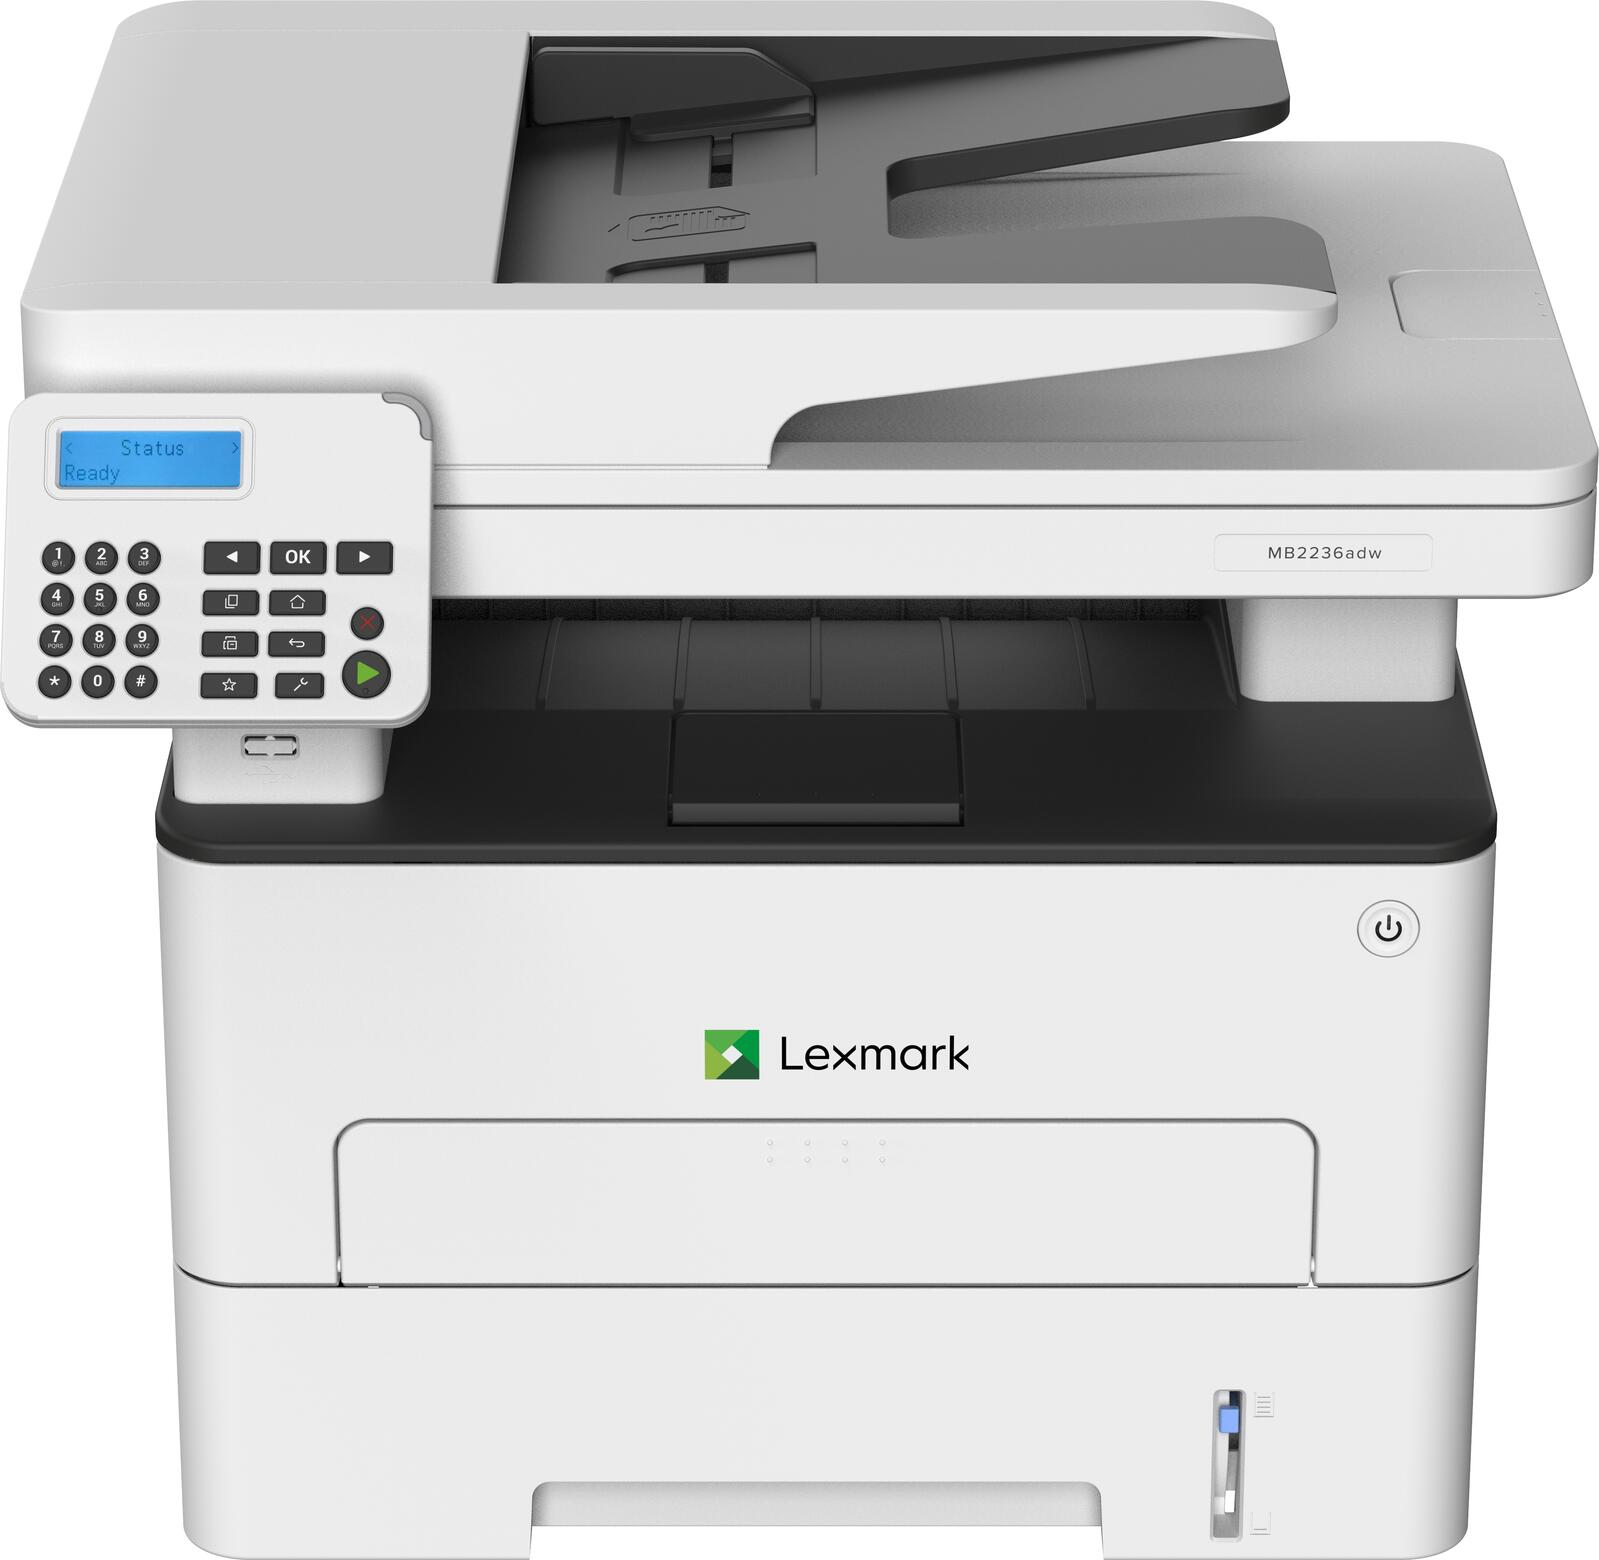 Laser-Multifunktionsdrucker Fax, Drucker, Laser Kopierer, ADF) MB2236adw (A4, 4-in-1, Scanner, Drucker s/w LEXMARK und Multifunktionsgeräte